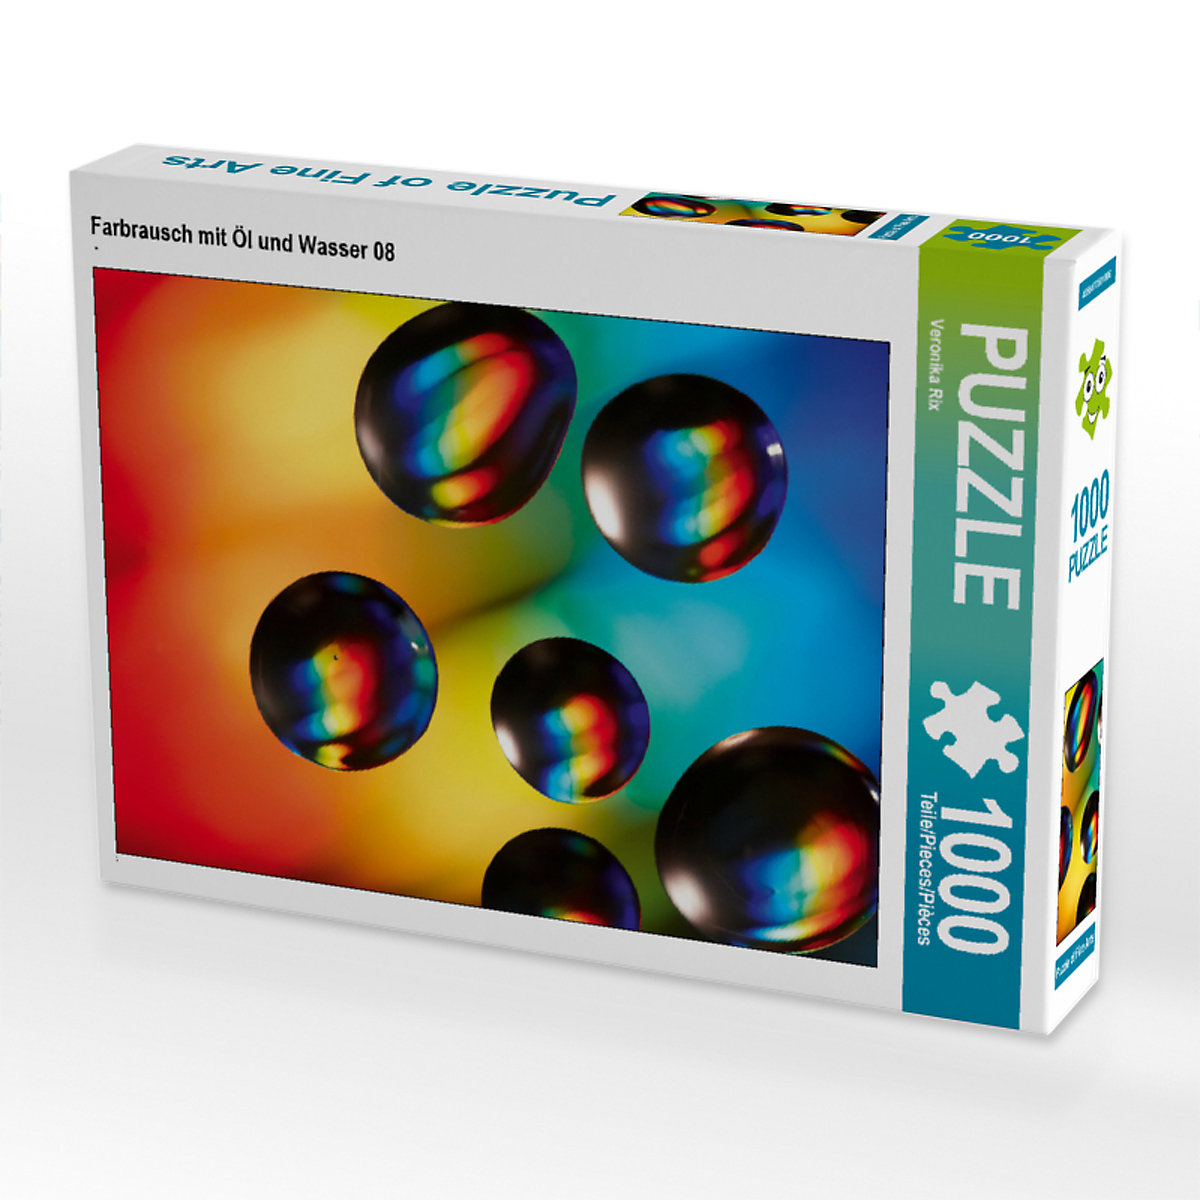 CALVENDO® Puzzle CALVENDO Puzzle Farbrausch mit Öl und Wasser 08 1000 Teile Foto-Puzzle für glückliche Stunden